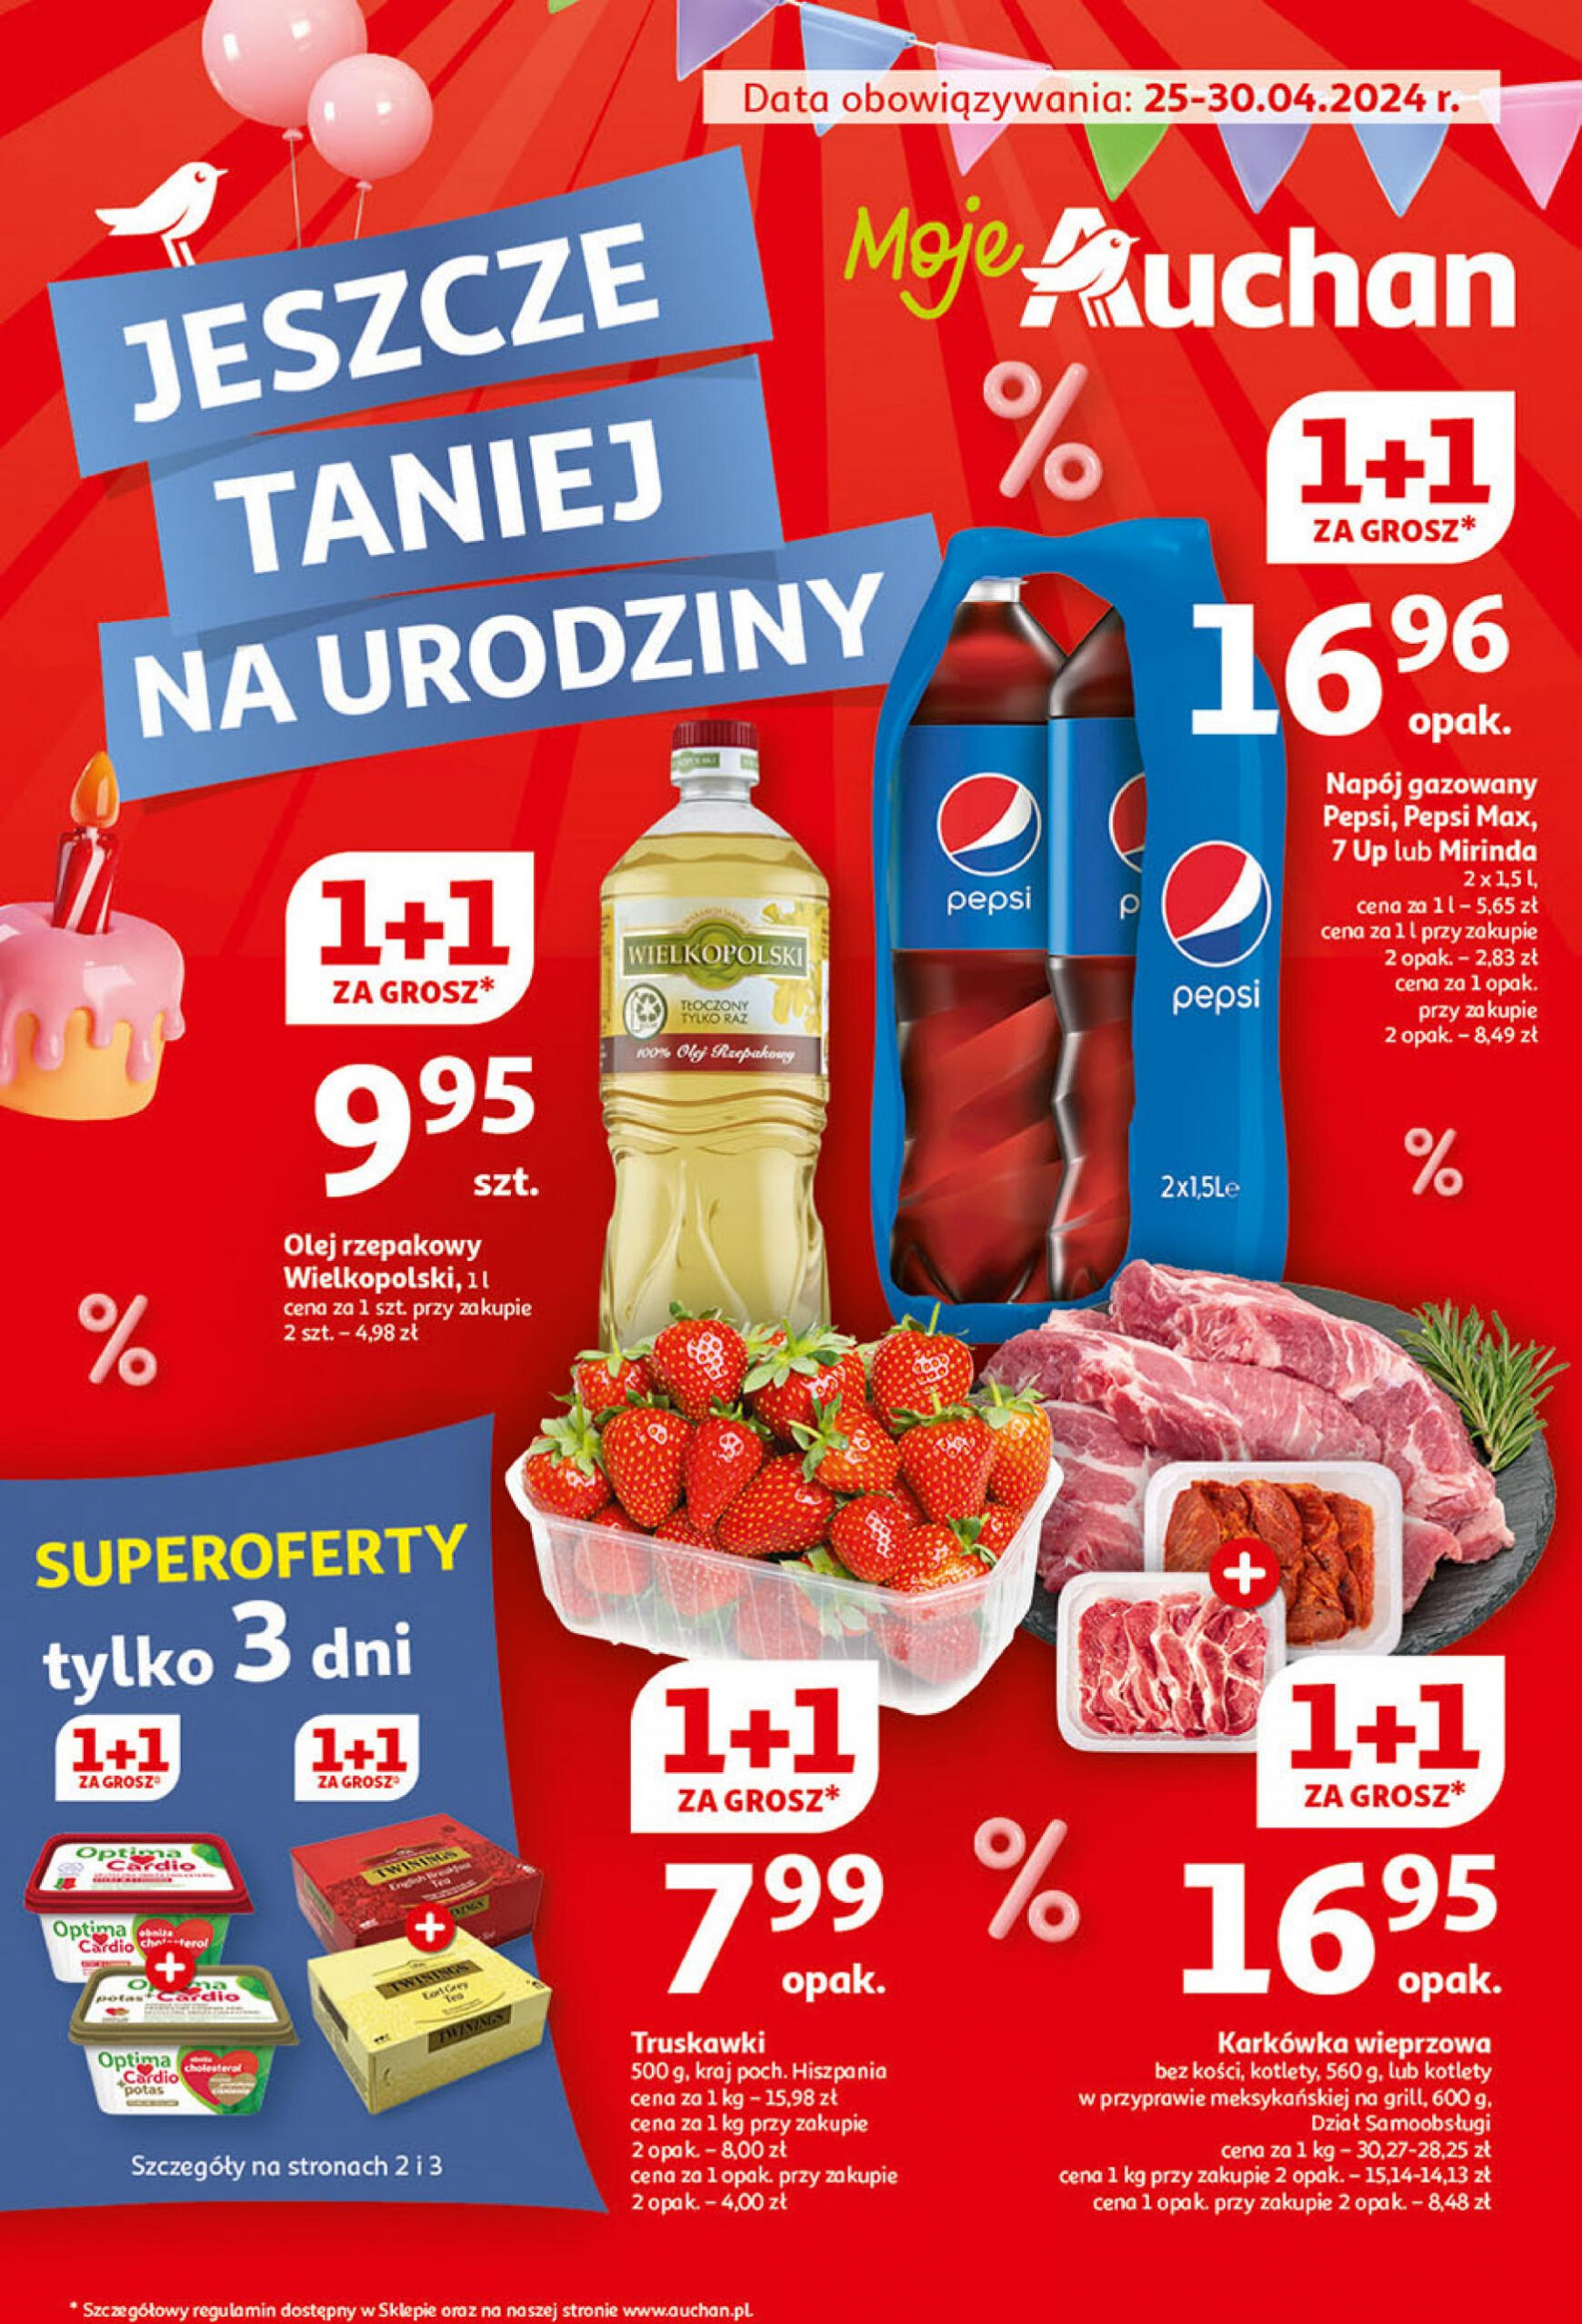 auchan - Moje Auchan - Gazetka Jeszcze taniej na urodziny gazetka aktualna ważna od 25.04. - 30.04.